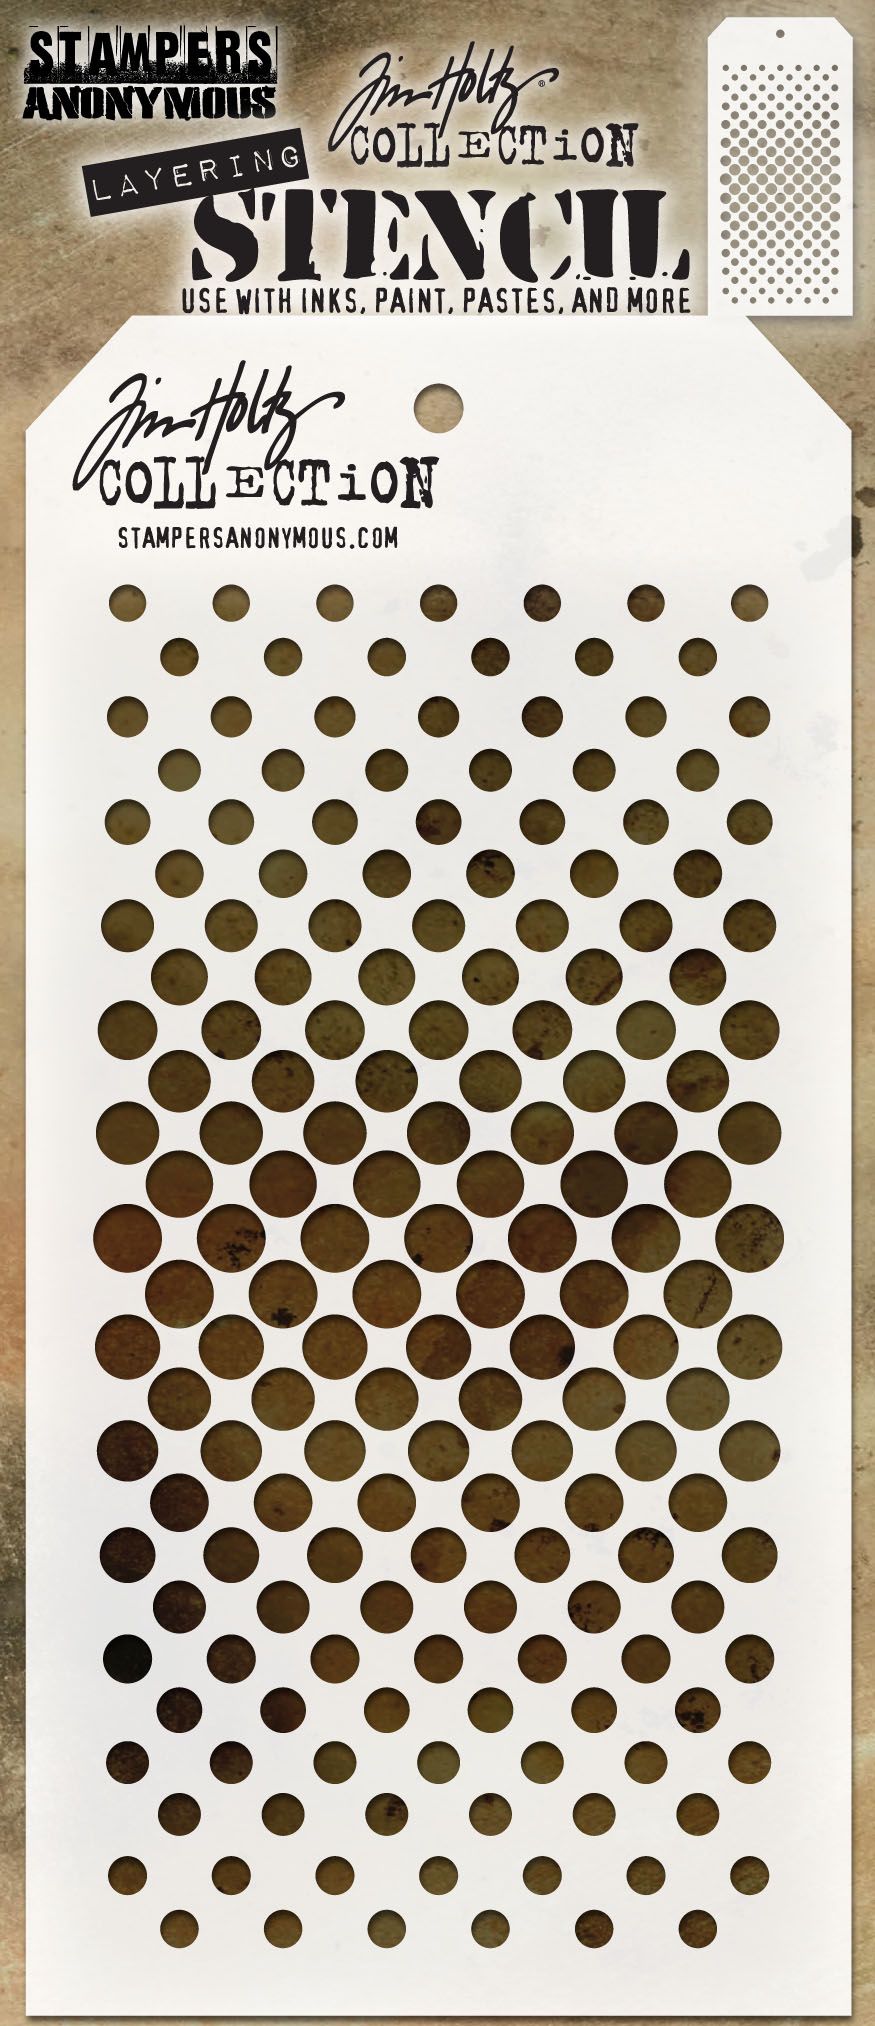 Tim Holtz - Layering Stencil - Gradient Dot